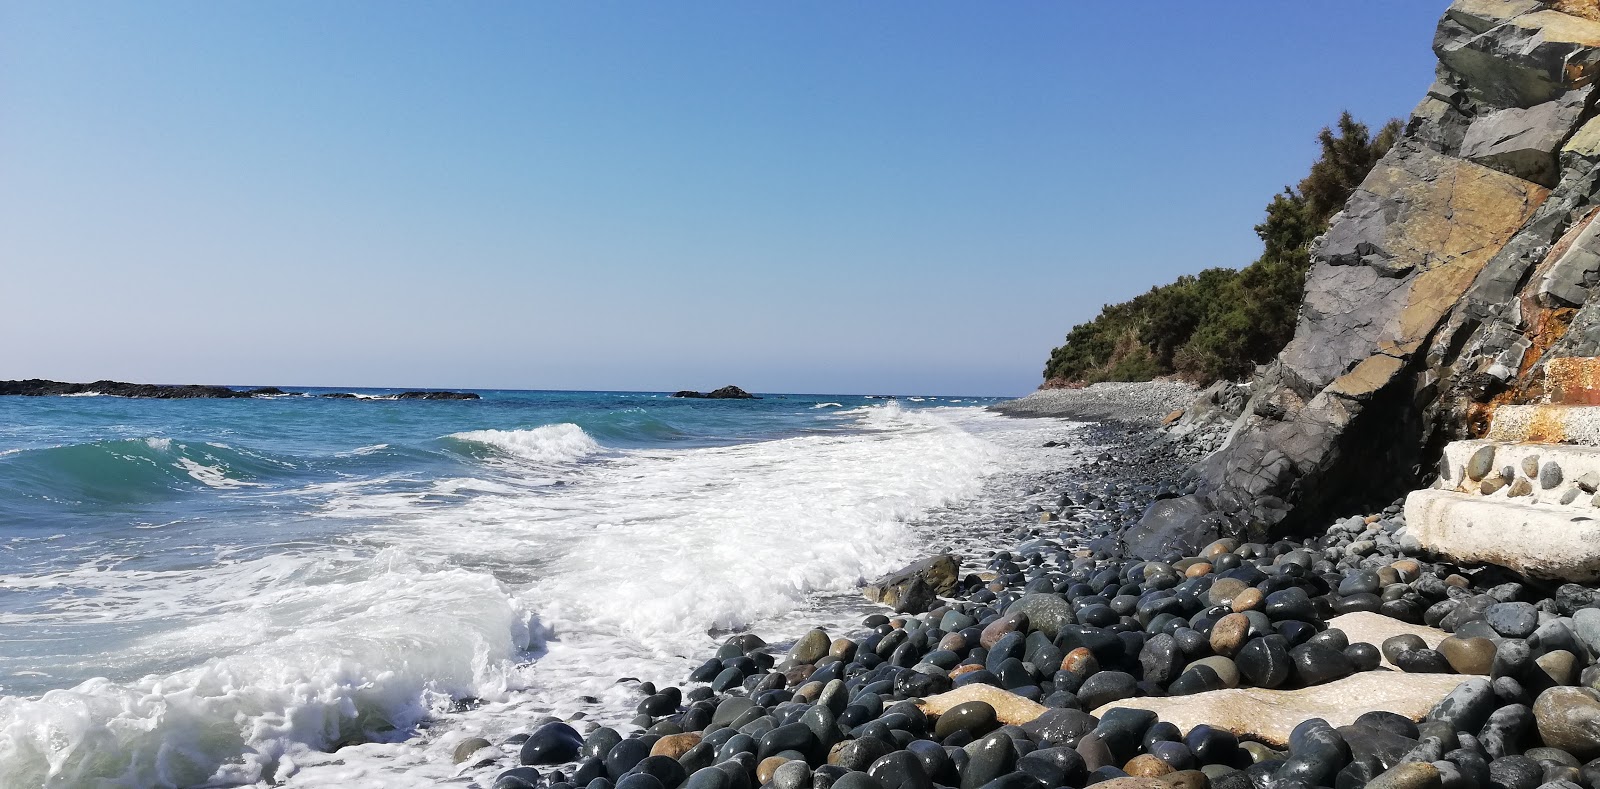 Akroyiali beach'in fotoğrafı geniş plaj ile birlikte